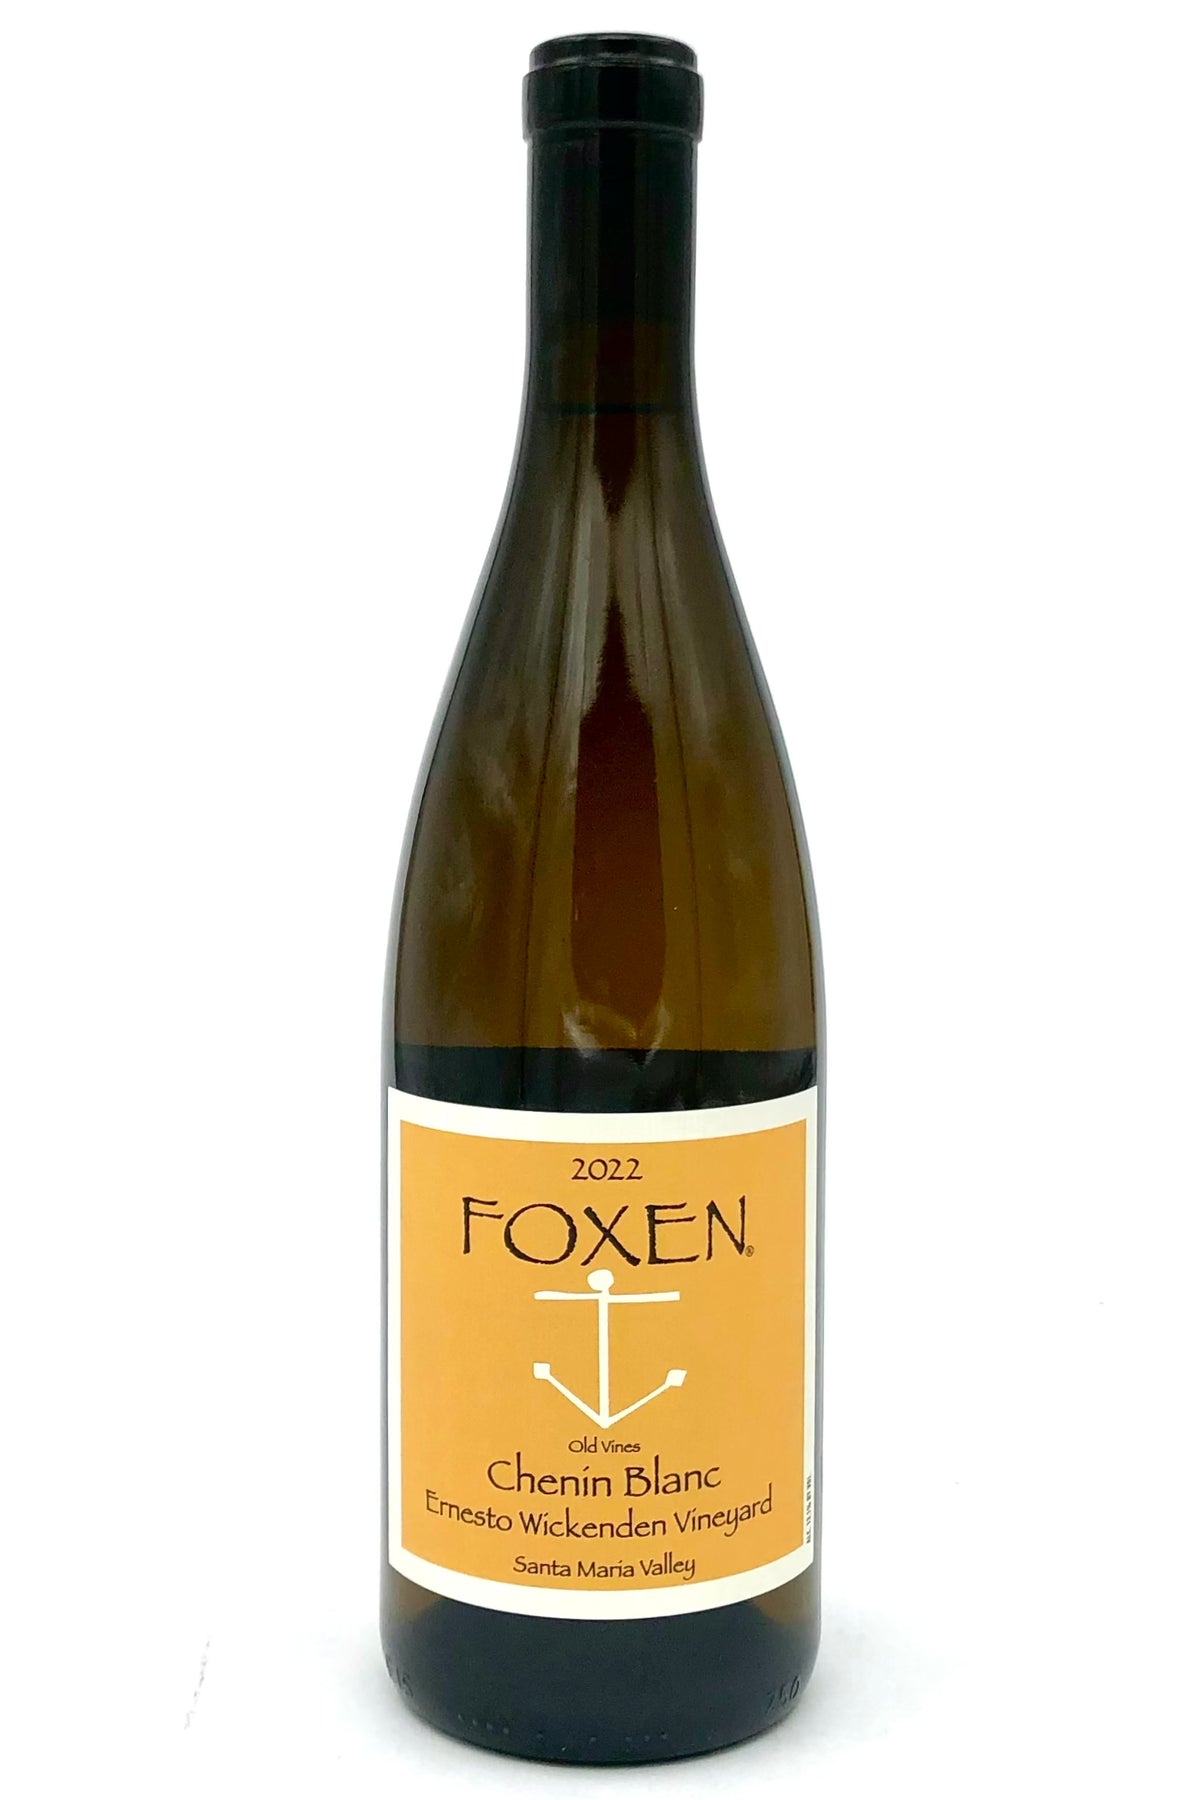 Foxen 2022 Old Vine Chenin Blanc Ernesto Wickenden Vineyard Santa Maria Valley